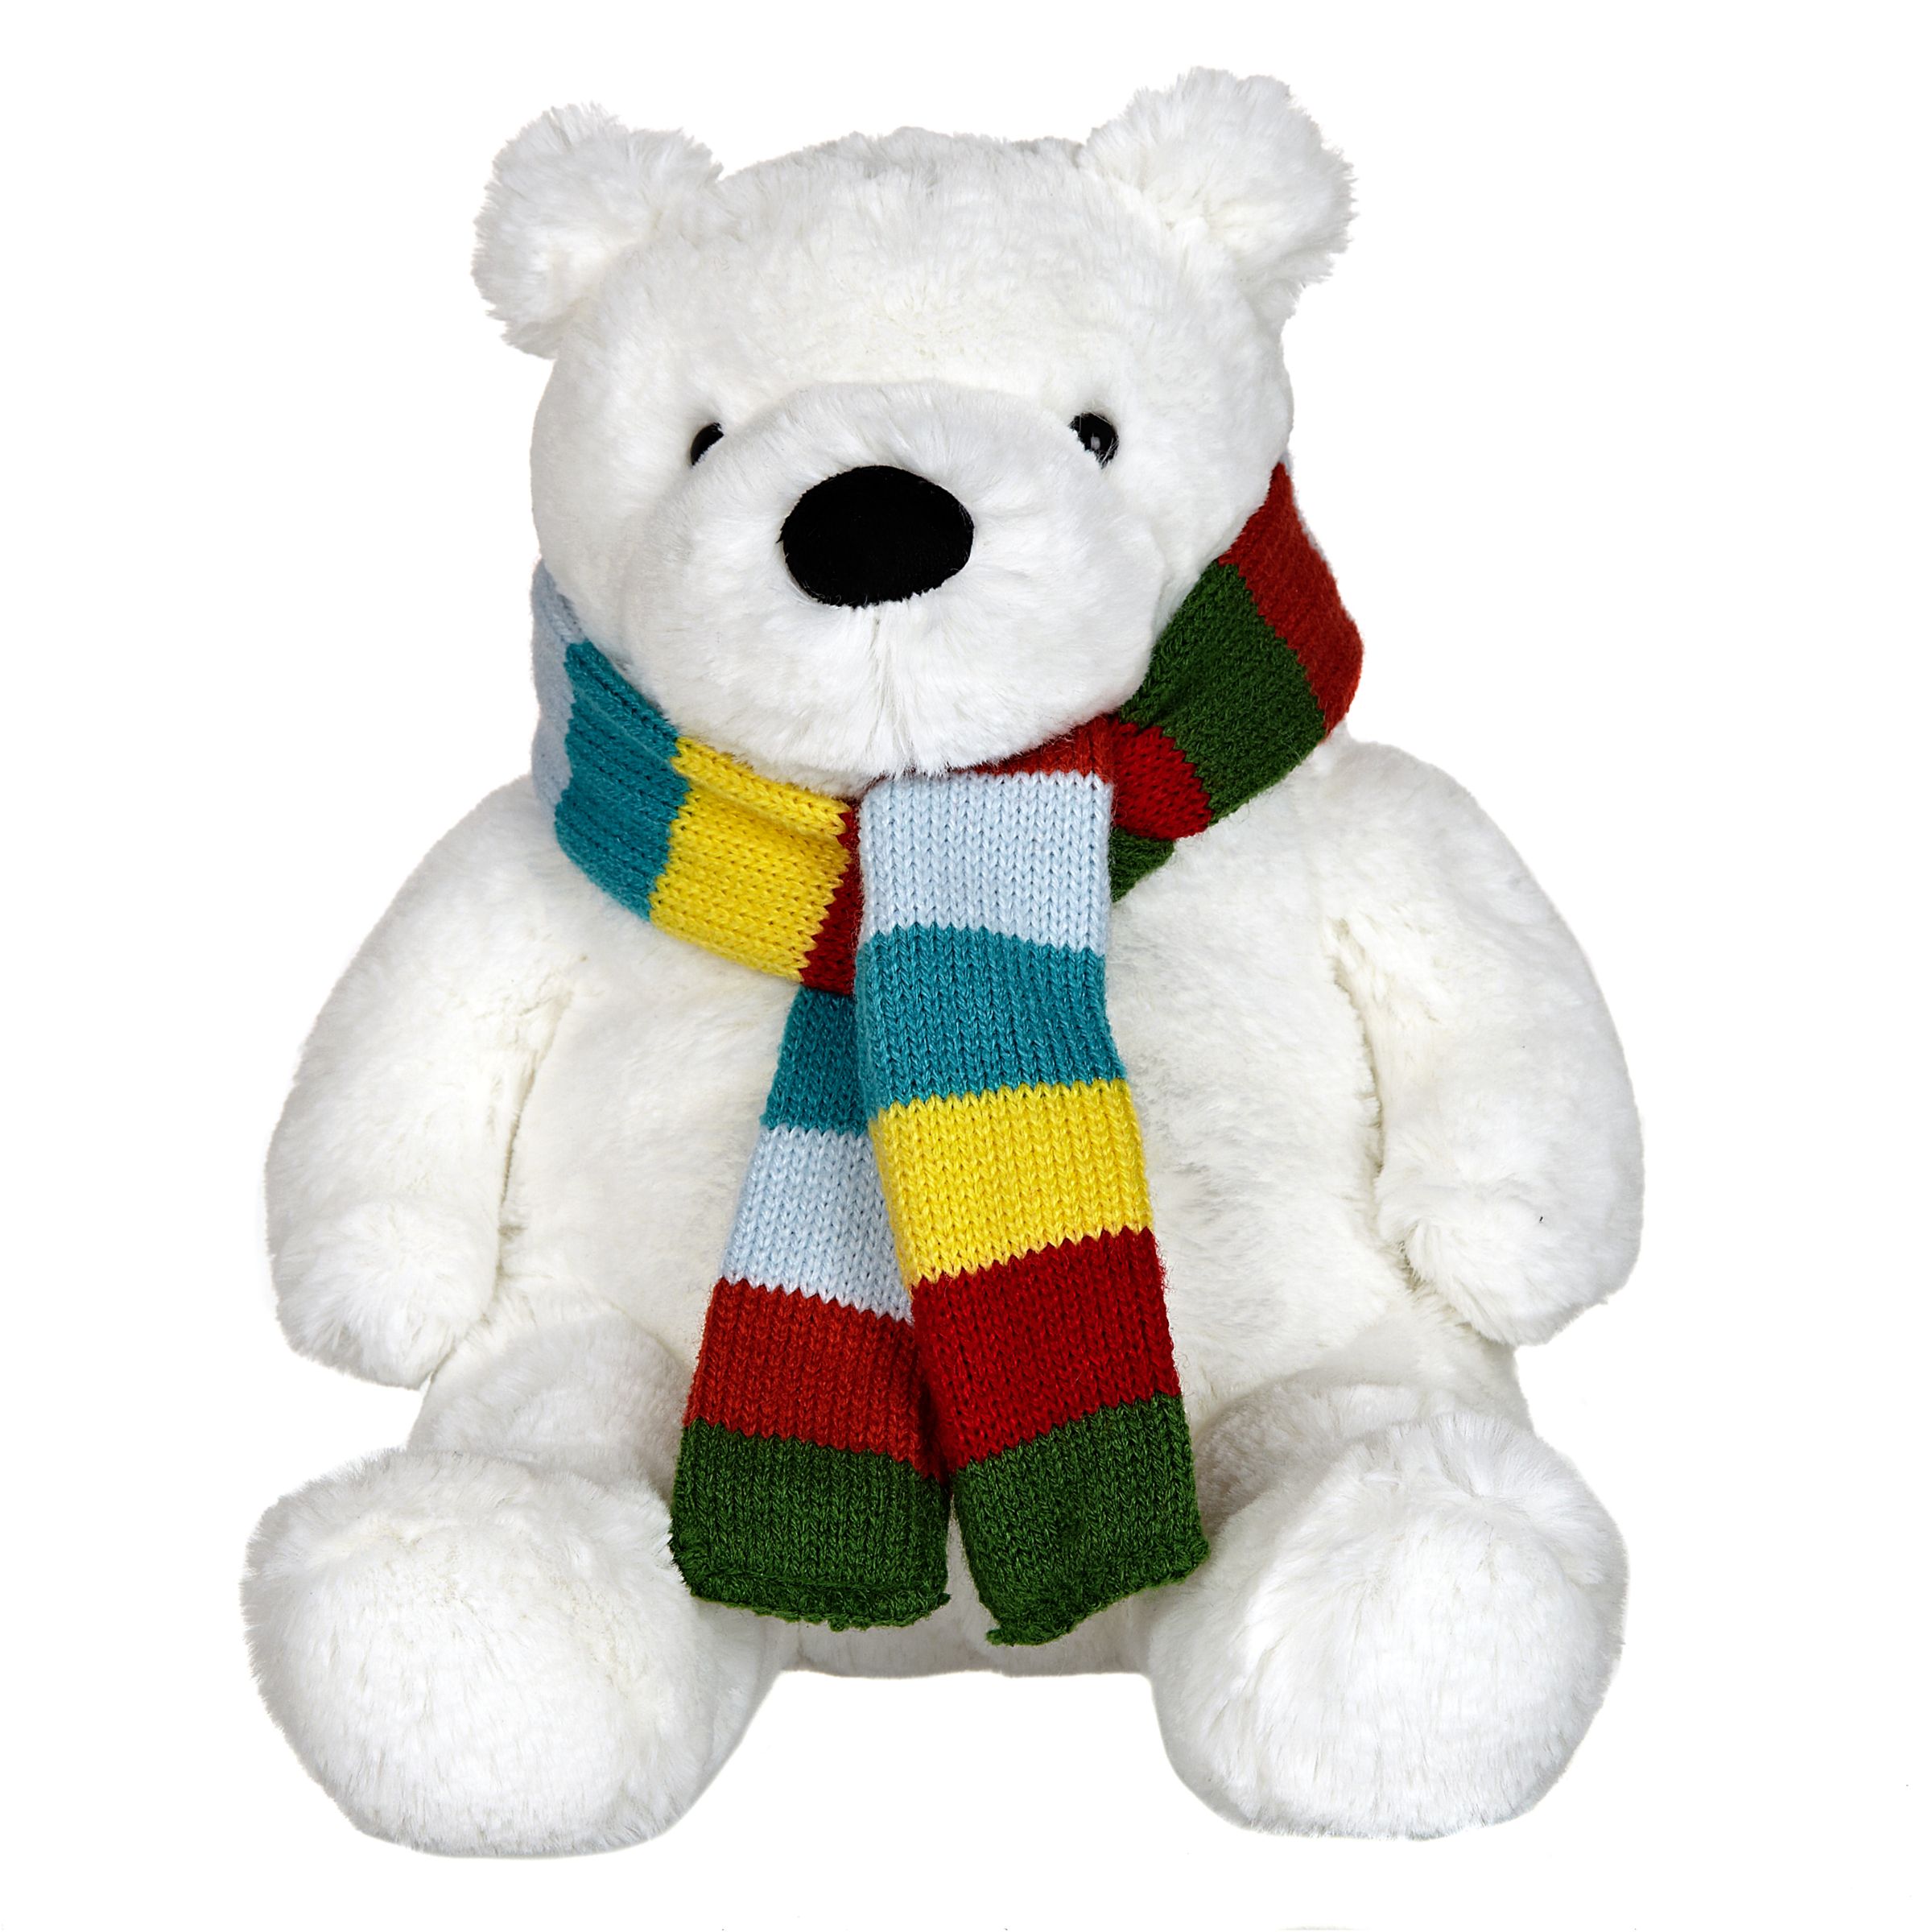 John Lewis Polar Bear Plush Toy At John Lewis Partners - 